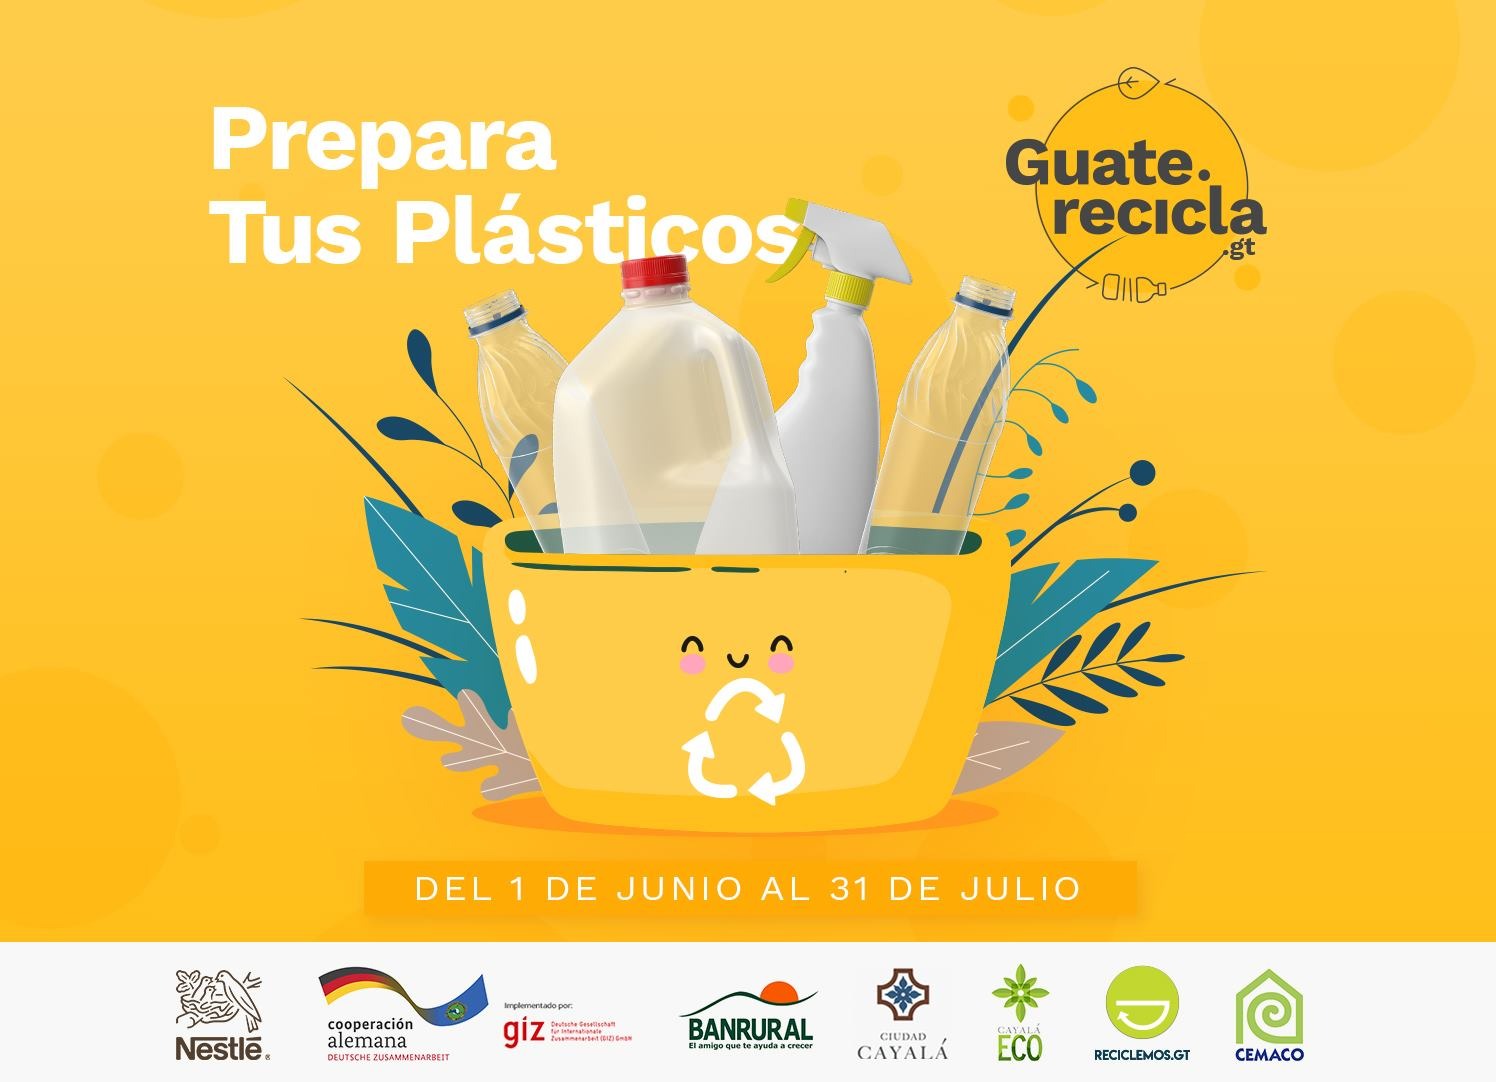 GUATE RECICLA la campaña que invita a los guatemaltecos a reciclar 